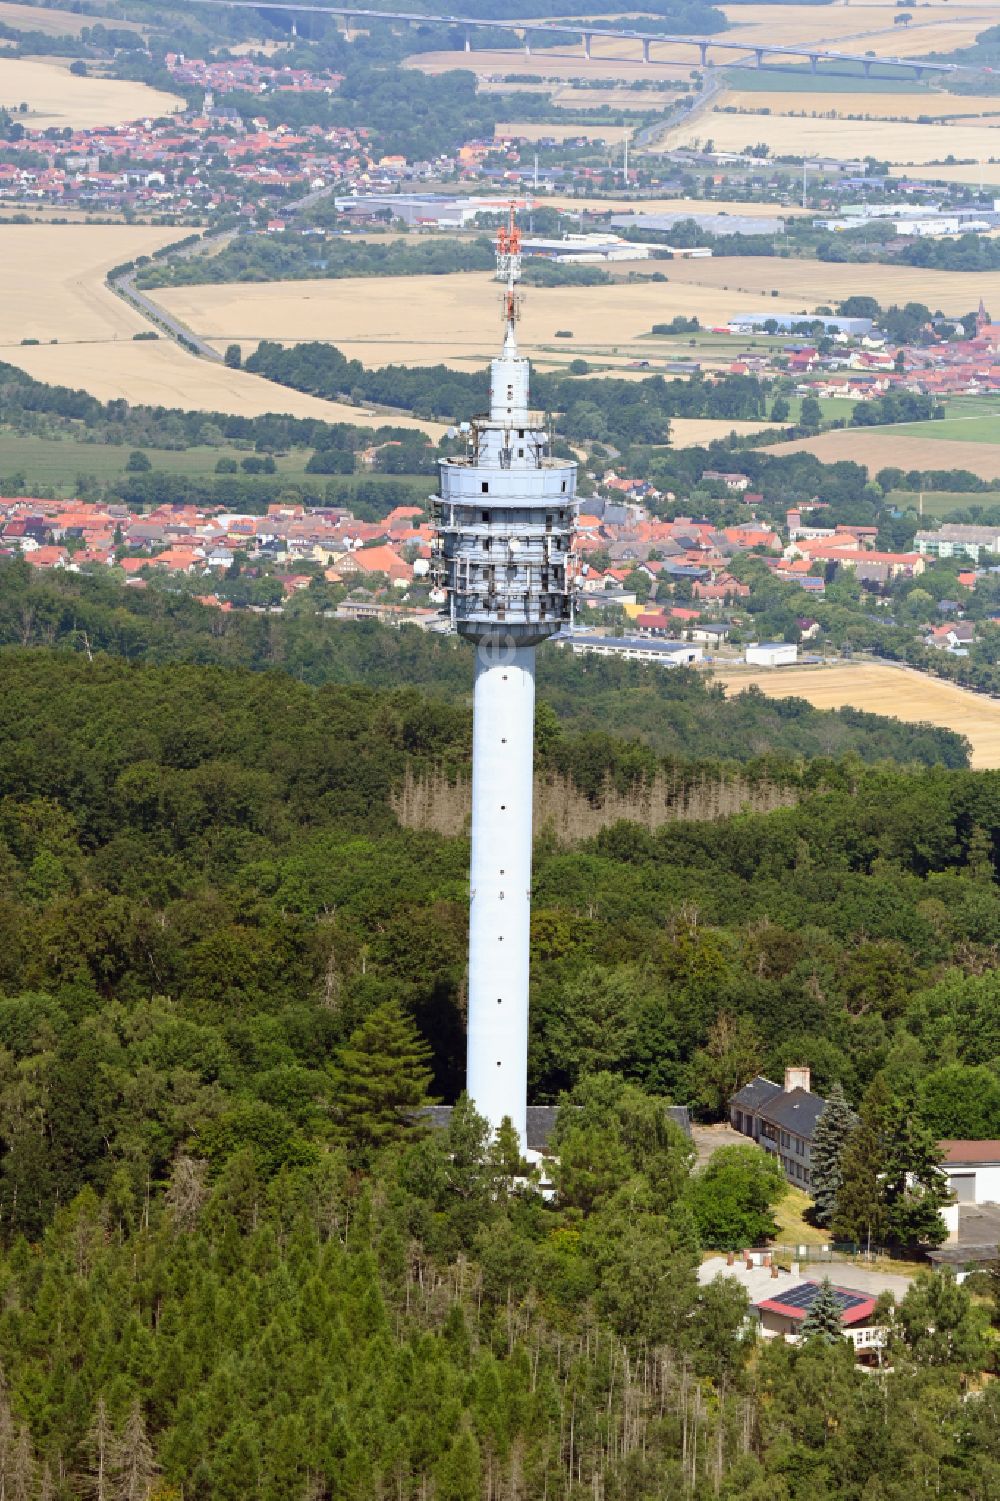 Steinthaleben von oben - Fernmeldeturm und Fernsehturm in Steinthaleben im Bundesland Thüringen, Deutschland